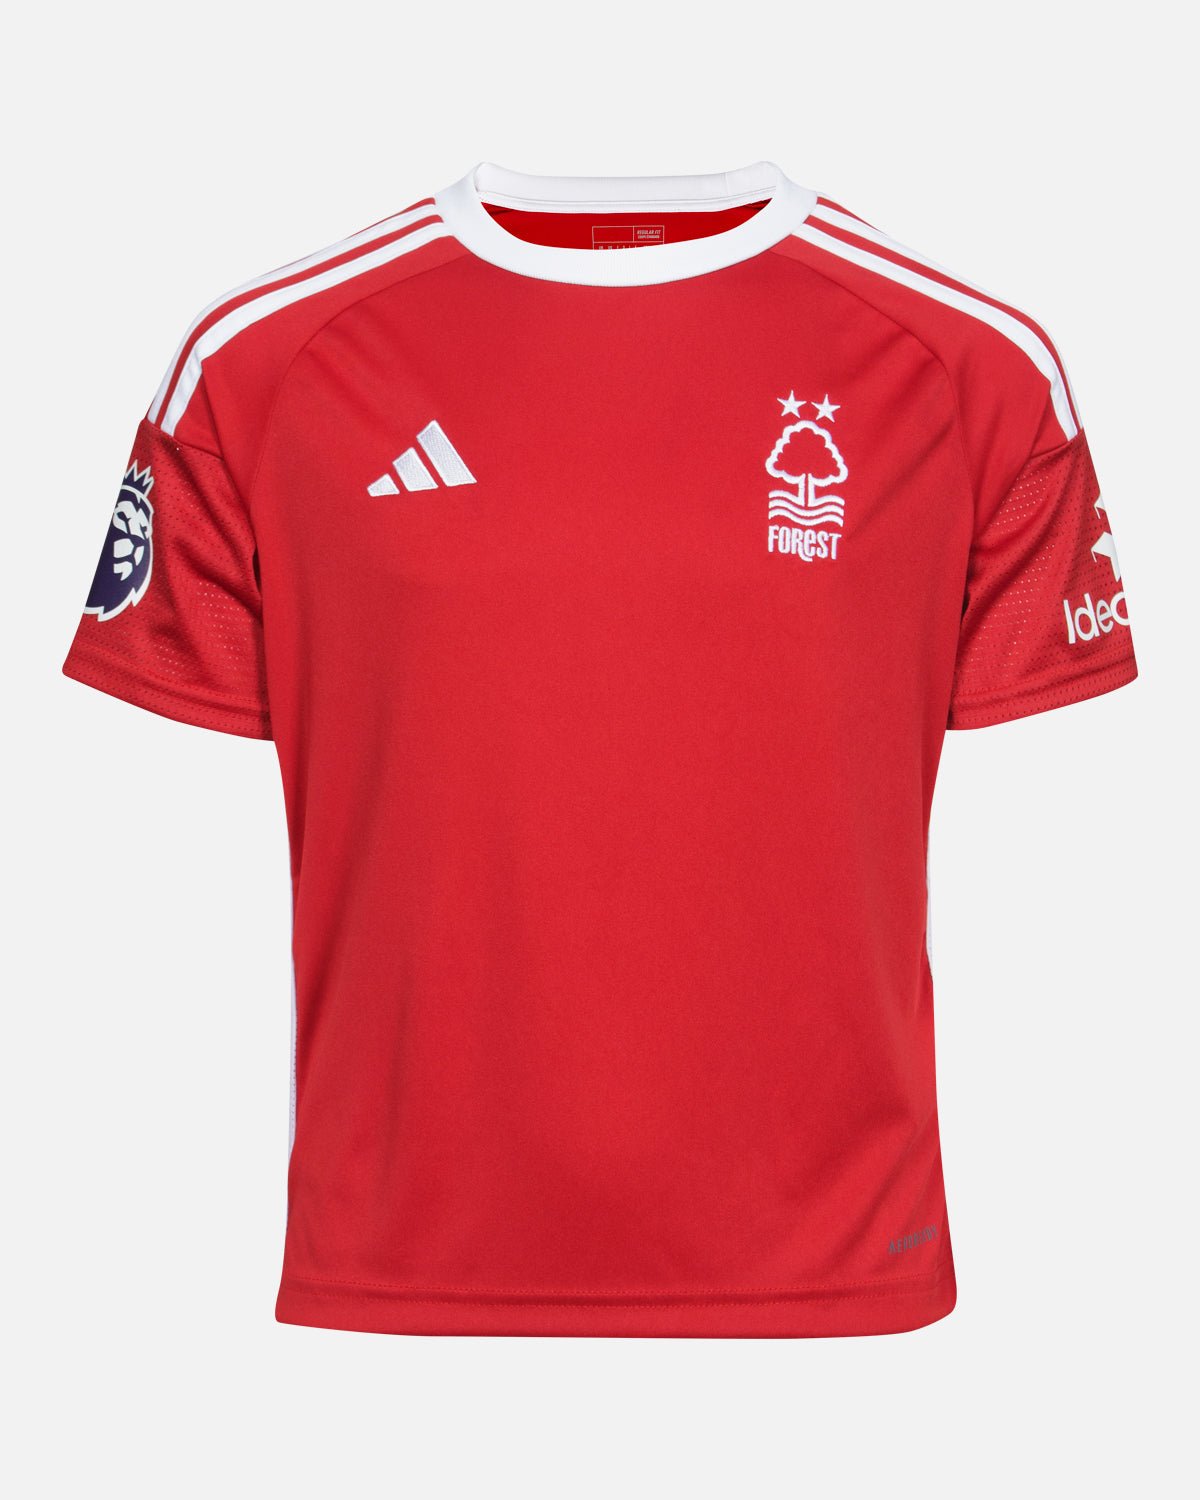 NFFC Junior Home Shirt 23-24 - Gibbs-White 10 - Nottingham Forest FC